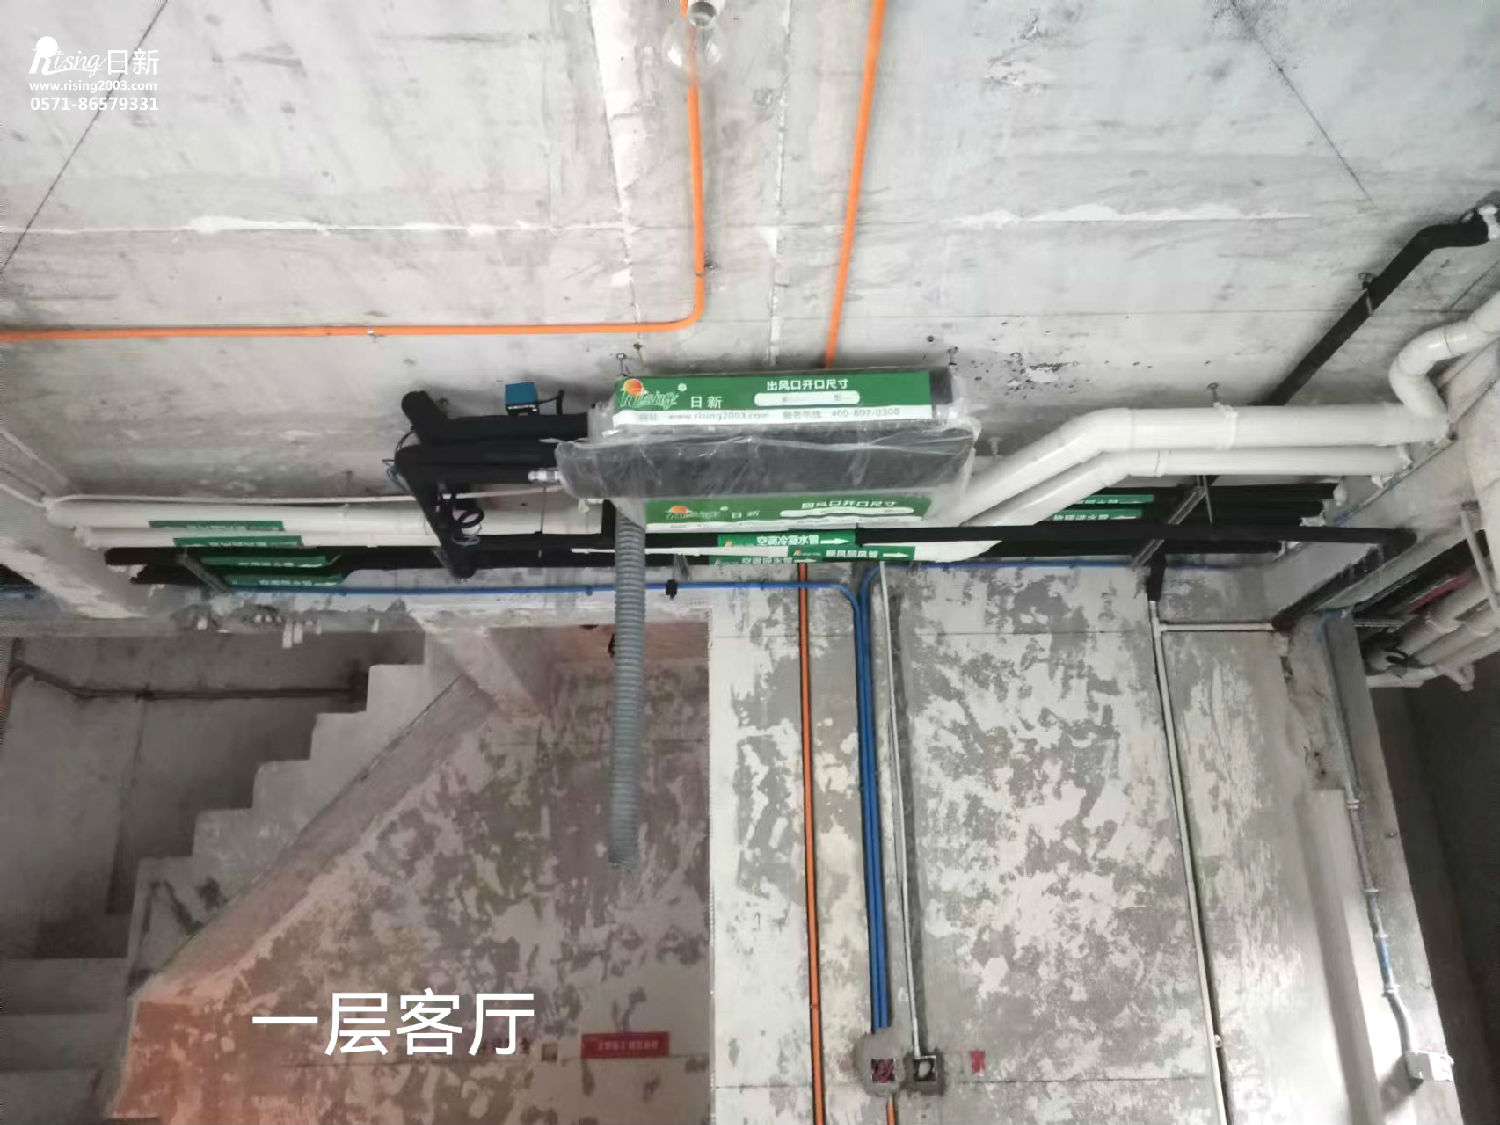 泰禾杭州院子风冷热泵系统项目空调阶段【日新环境】